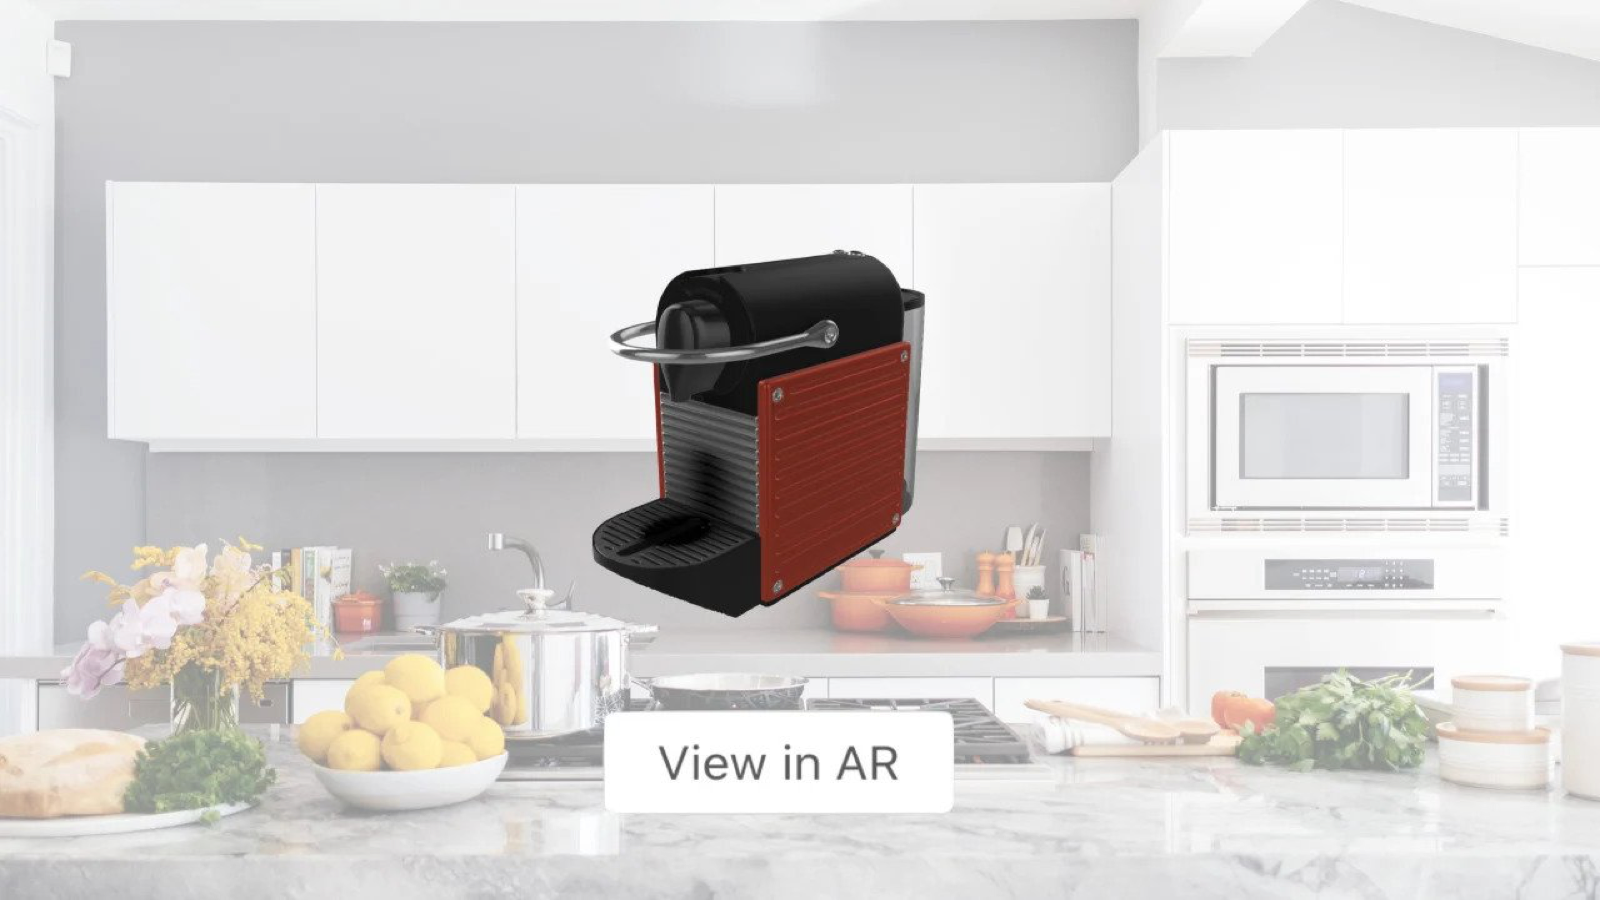 Stel shoppers in staat om producten in hun huis te plaatsen met AR